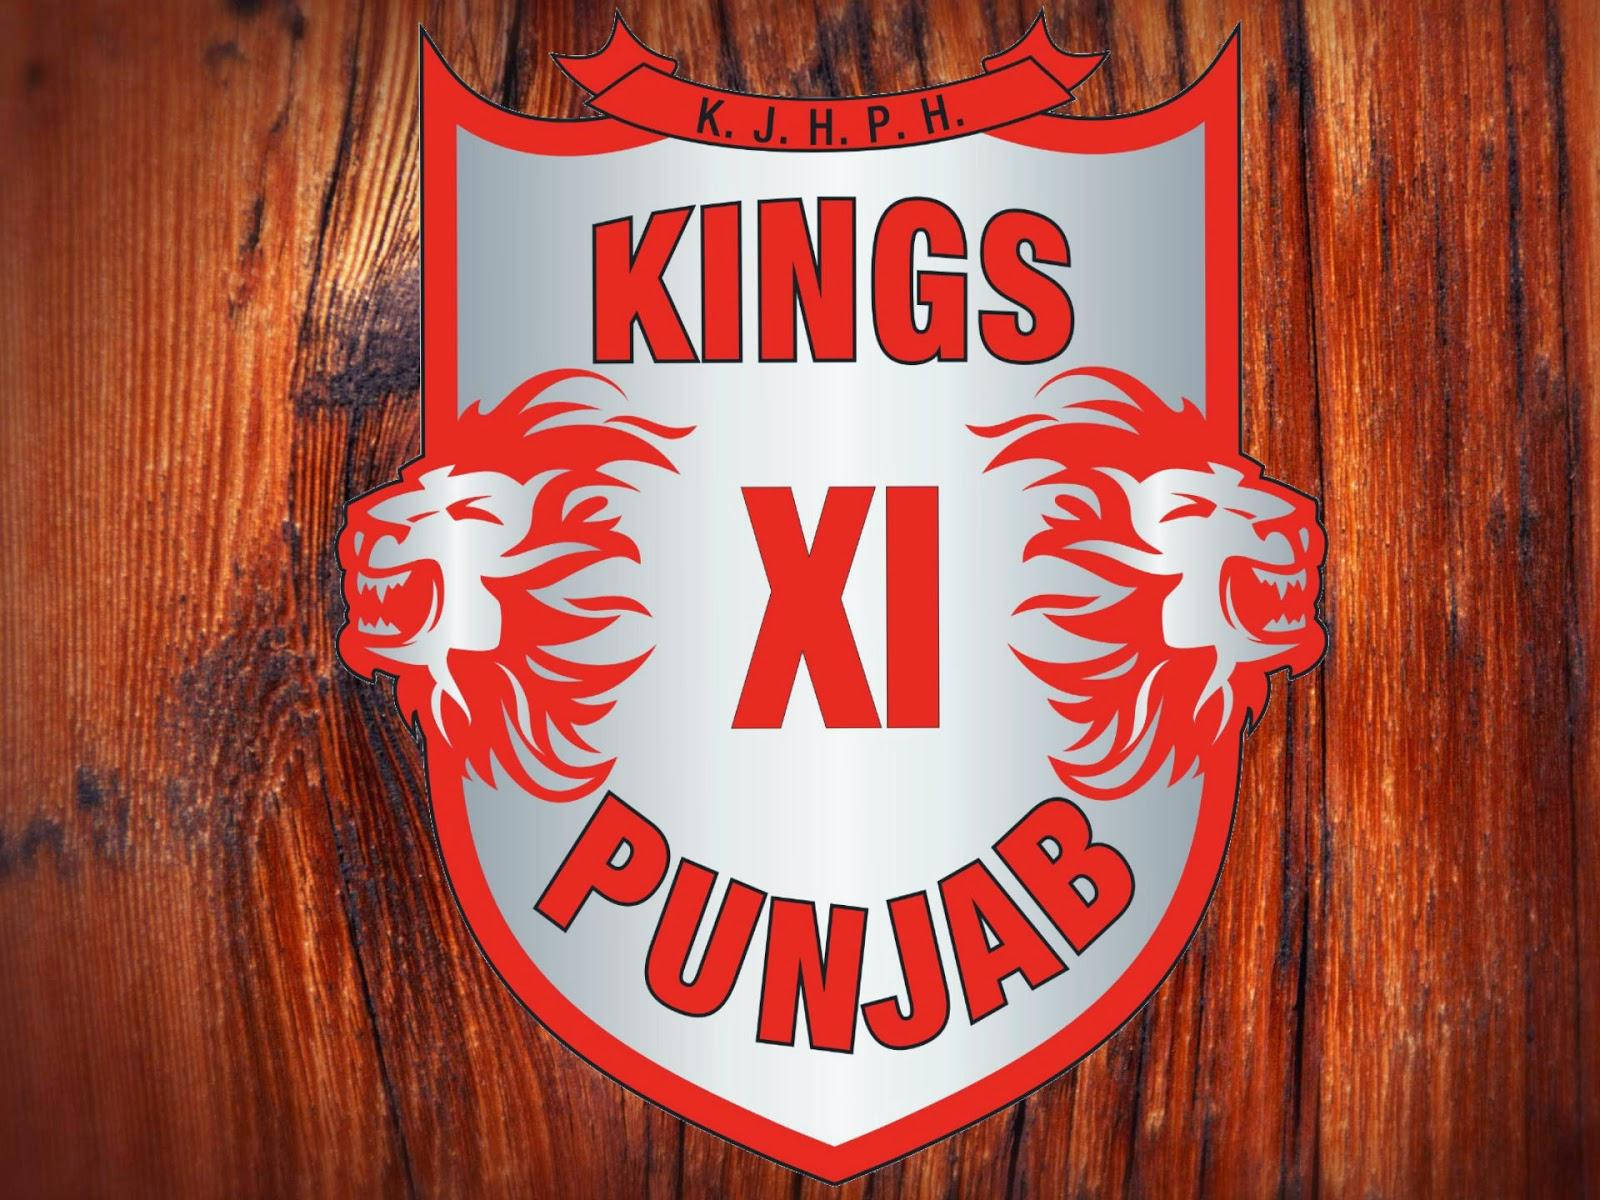 Punjab Kings On Wood Wallpaper